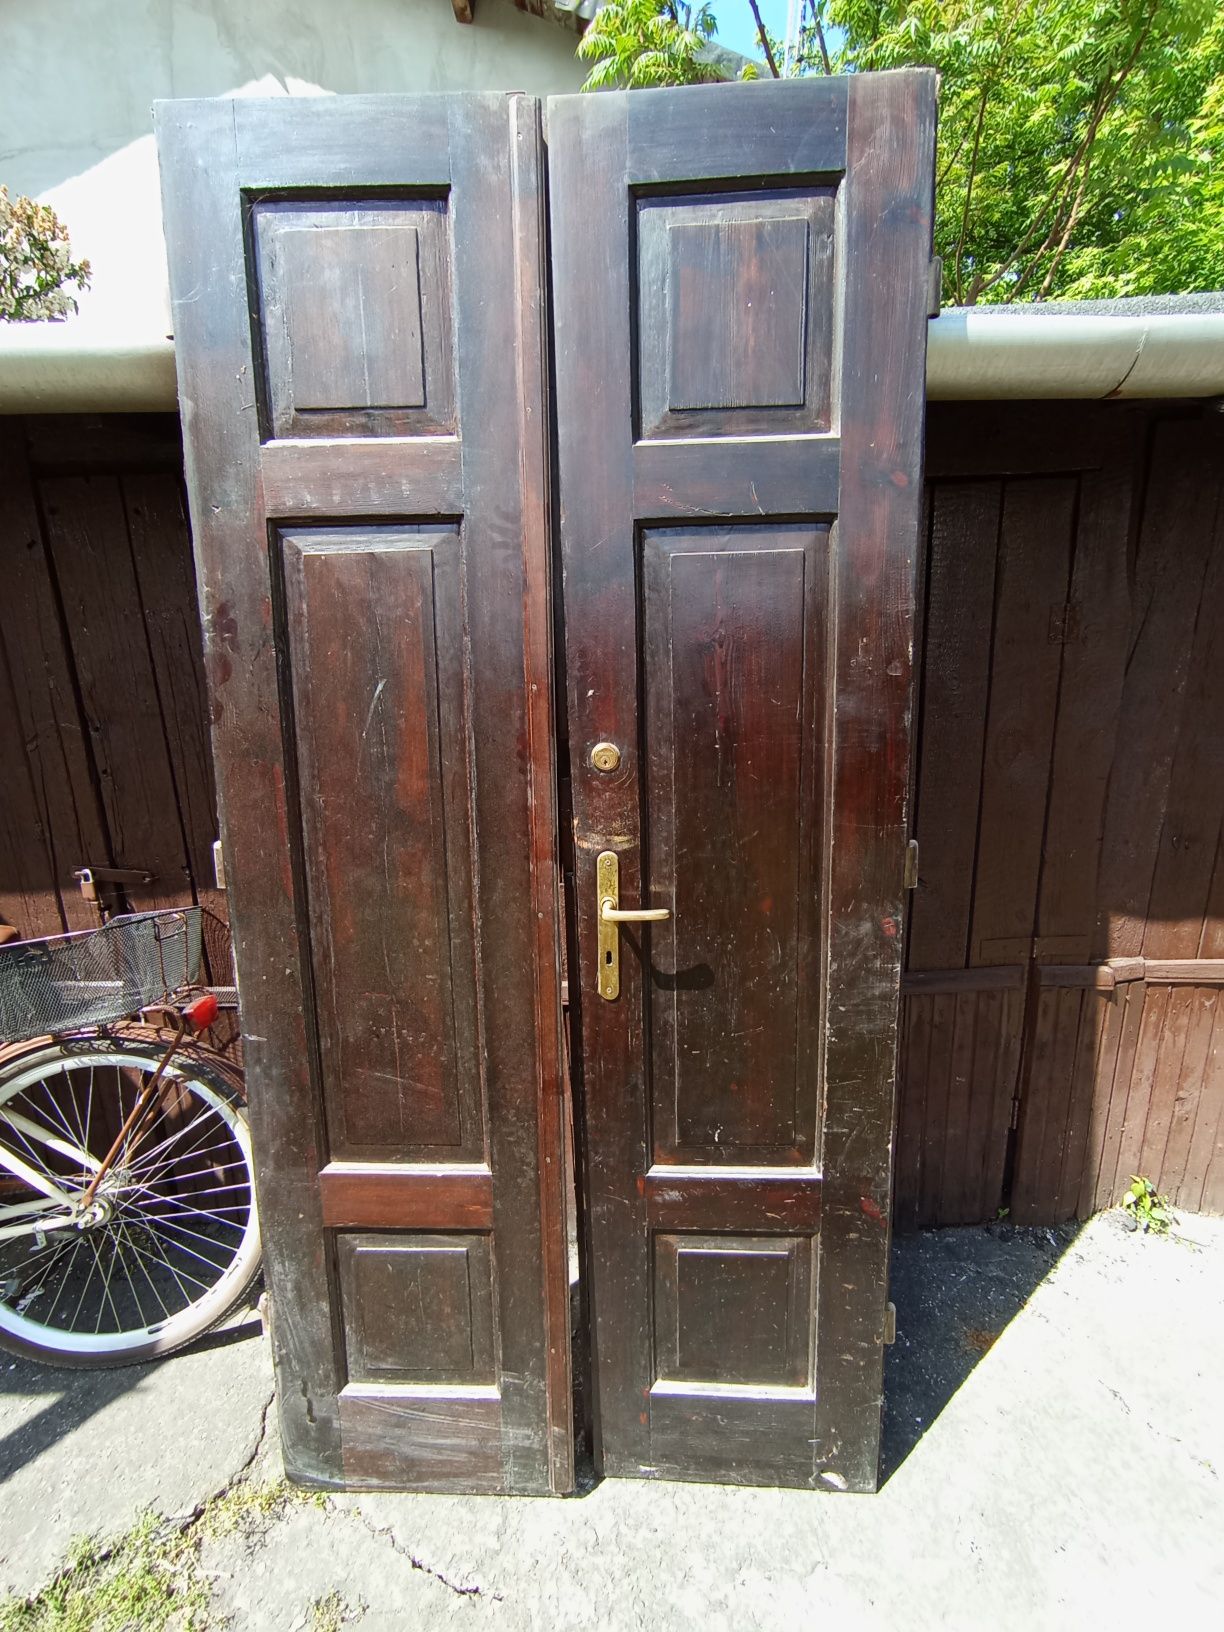 Stare przedwojenne drzwi wysokie